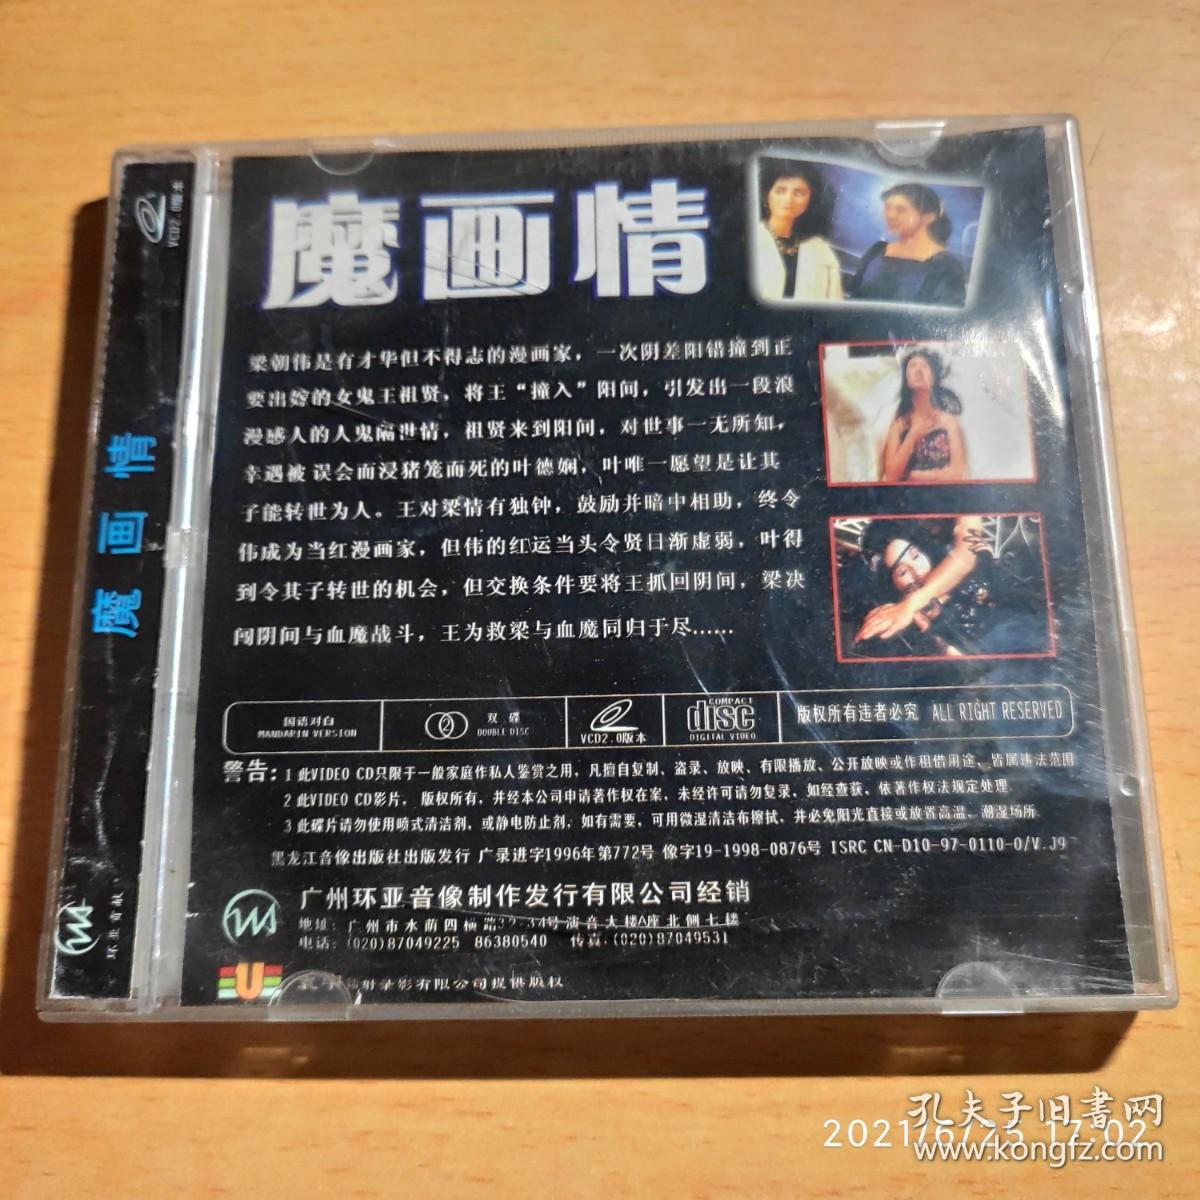 魔画情 VCD